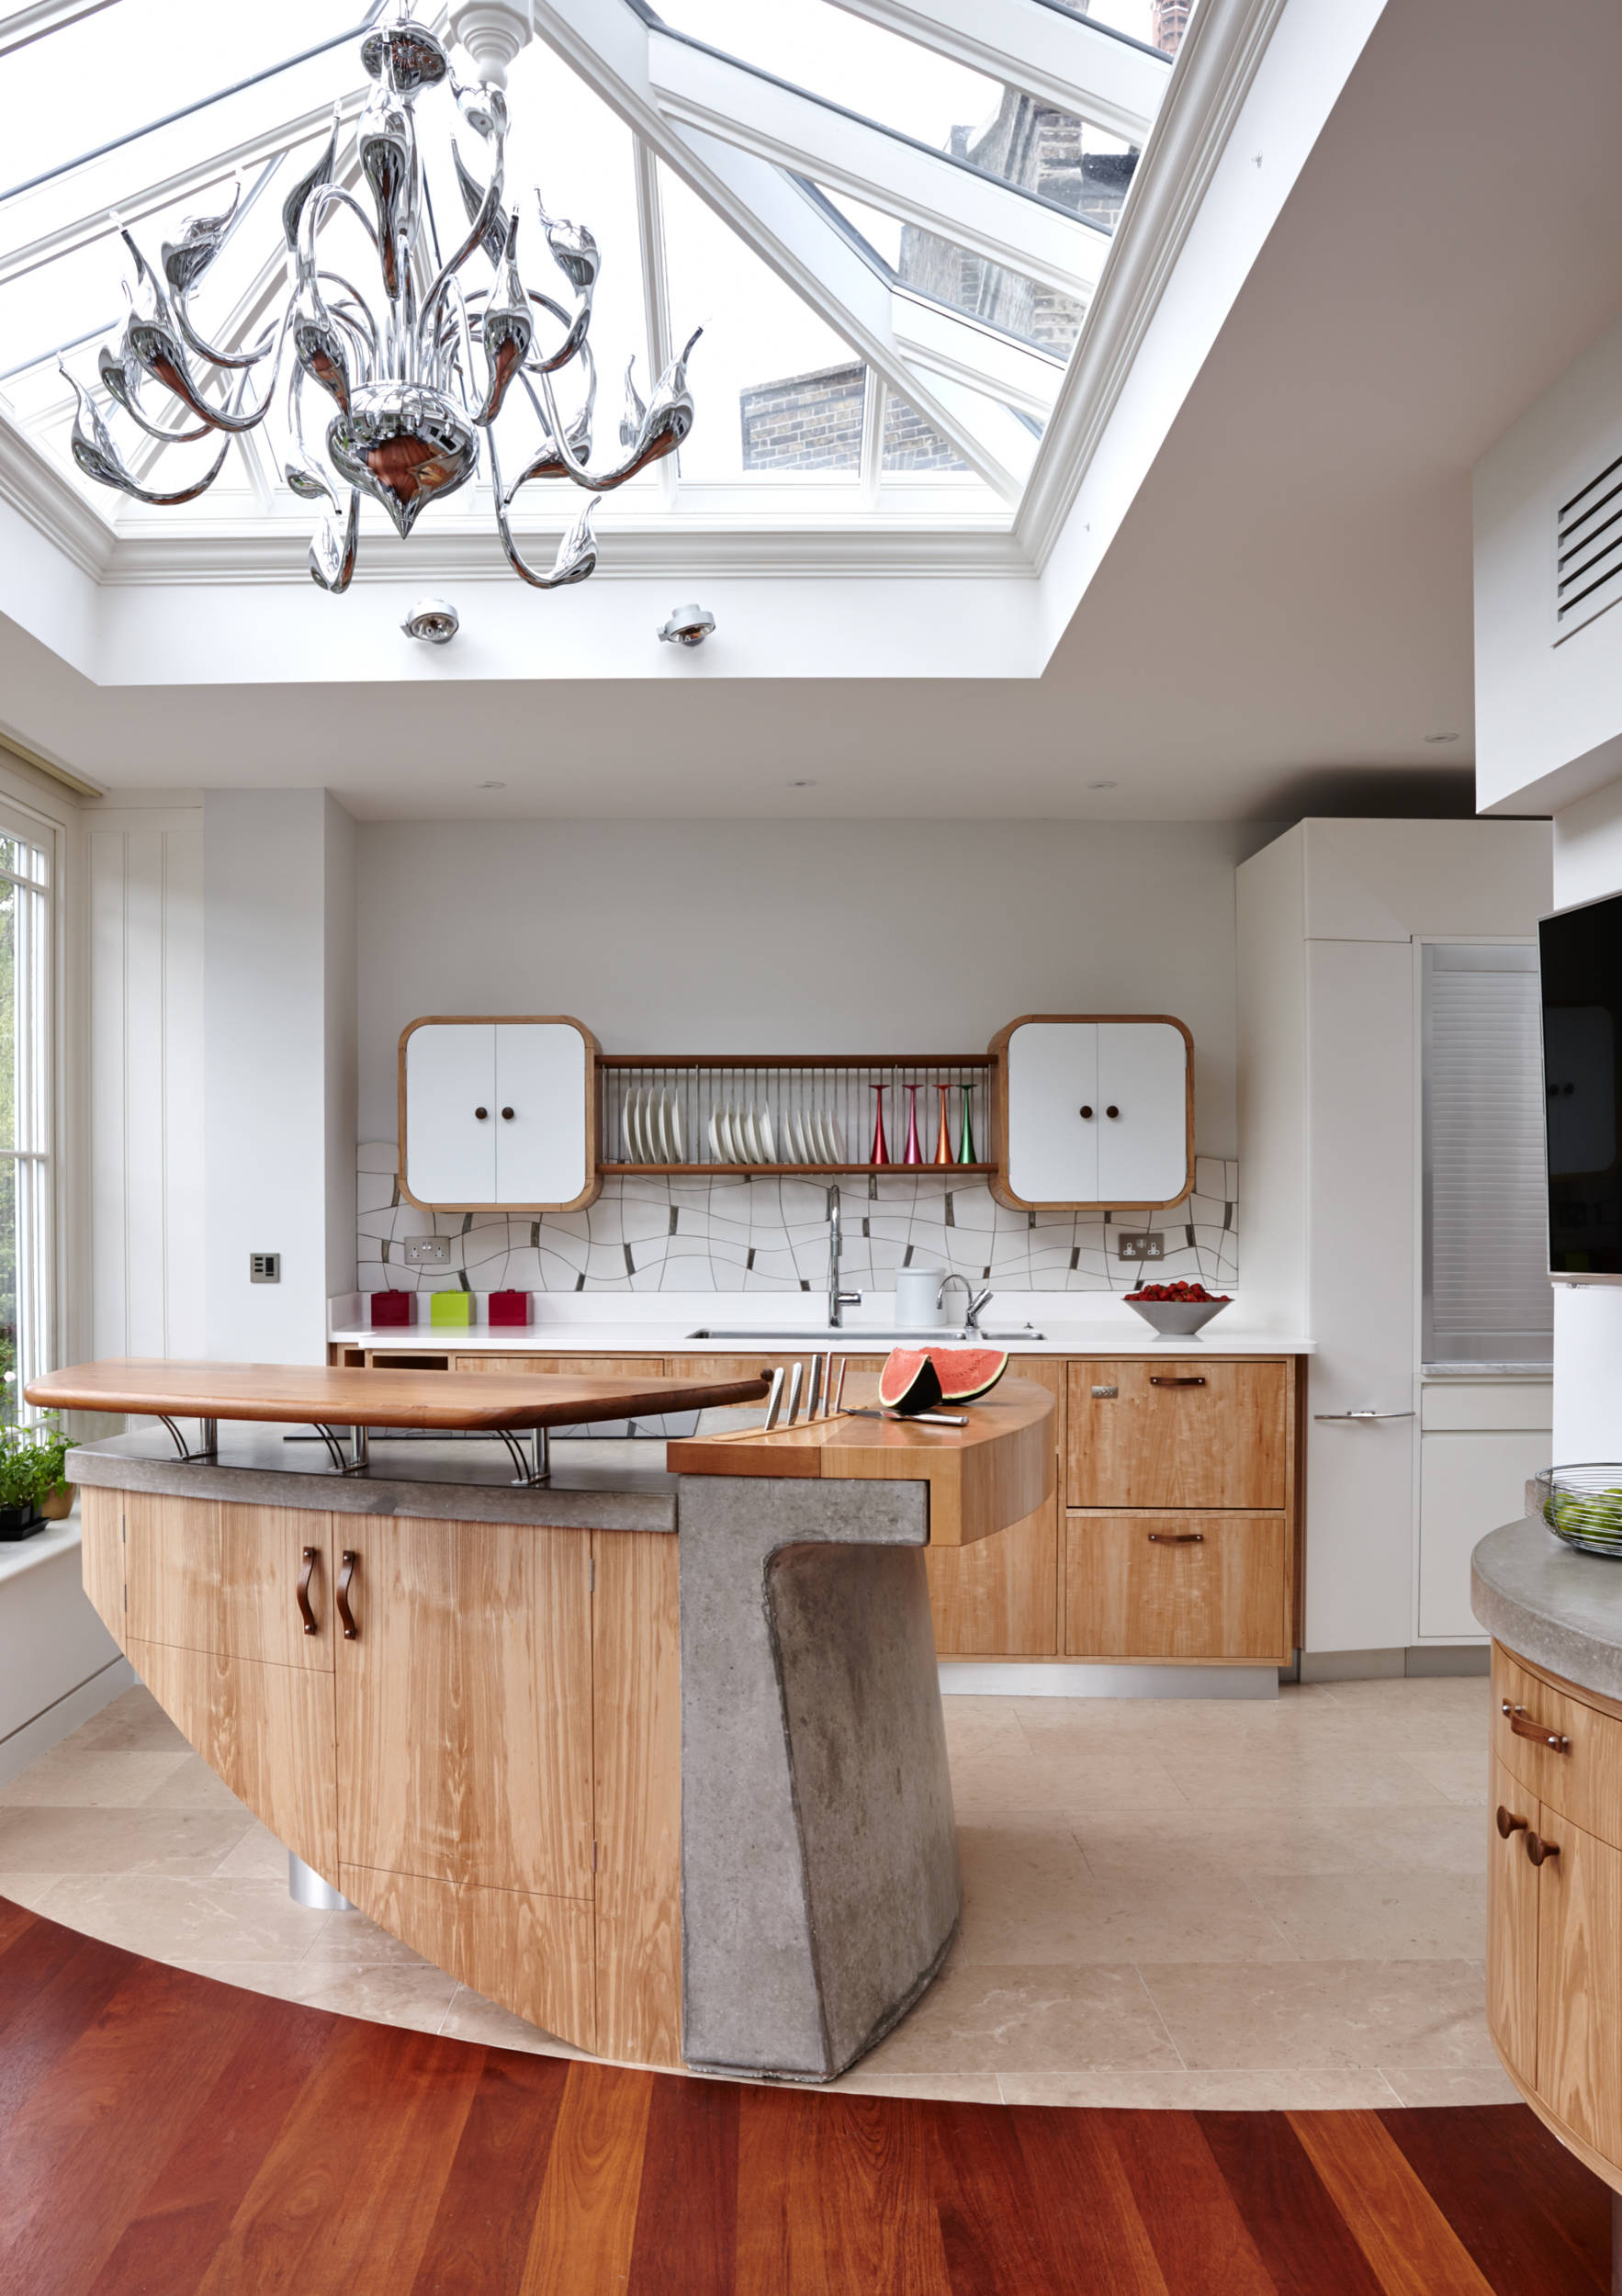 22 Kitchen Backsplash For Hickory Cabinets Best Designs